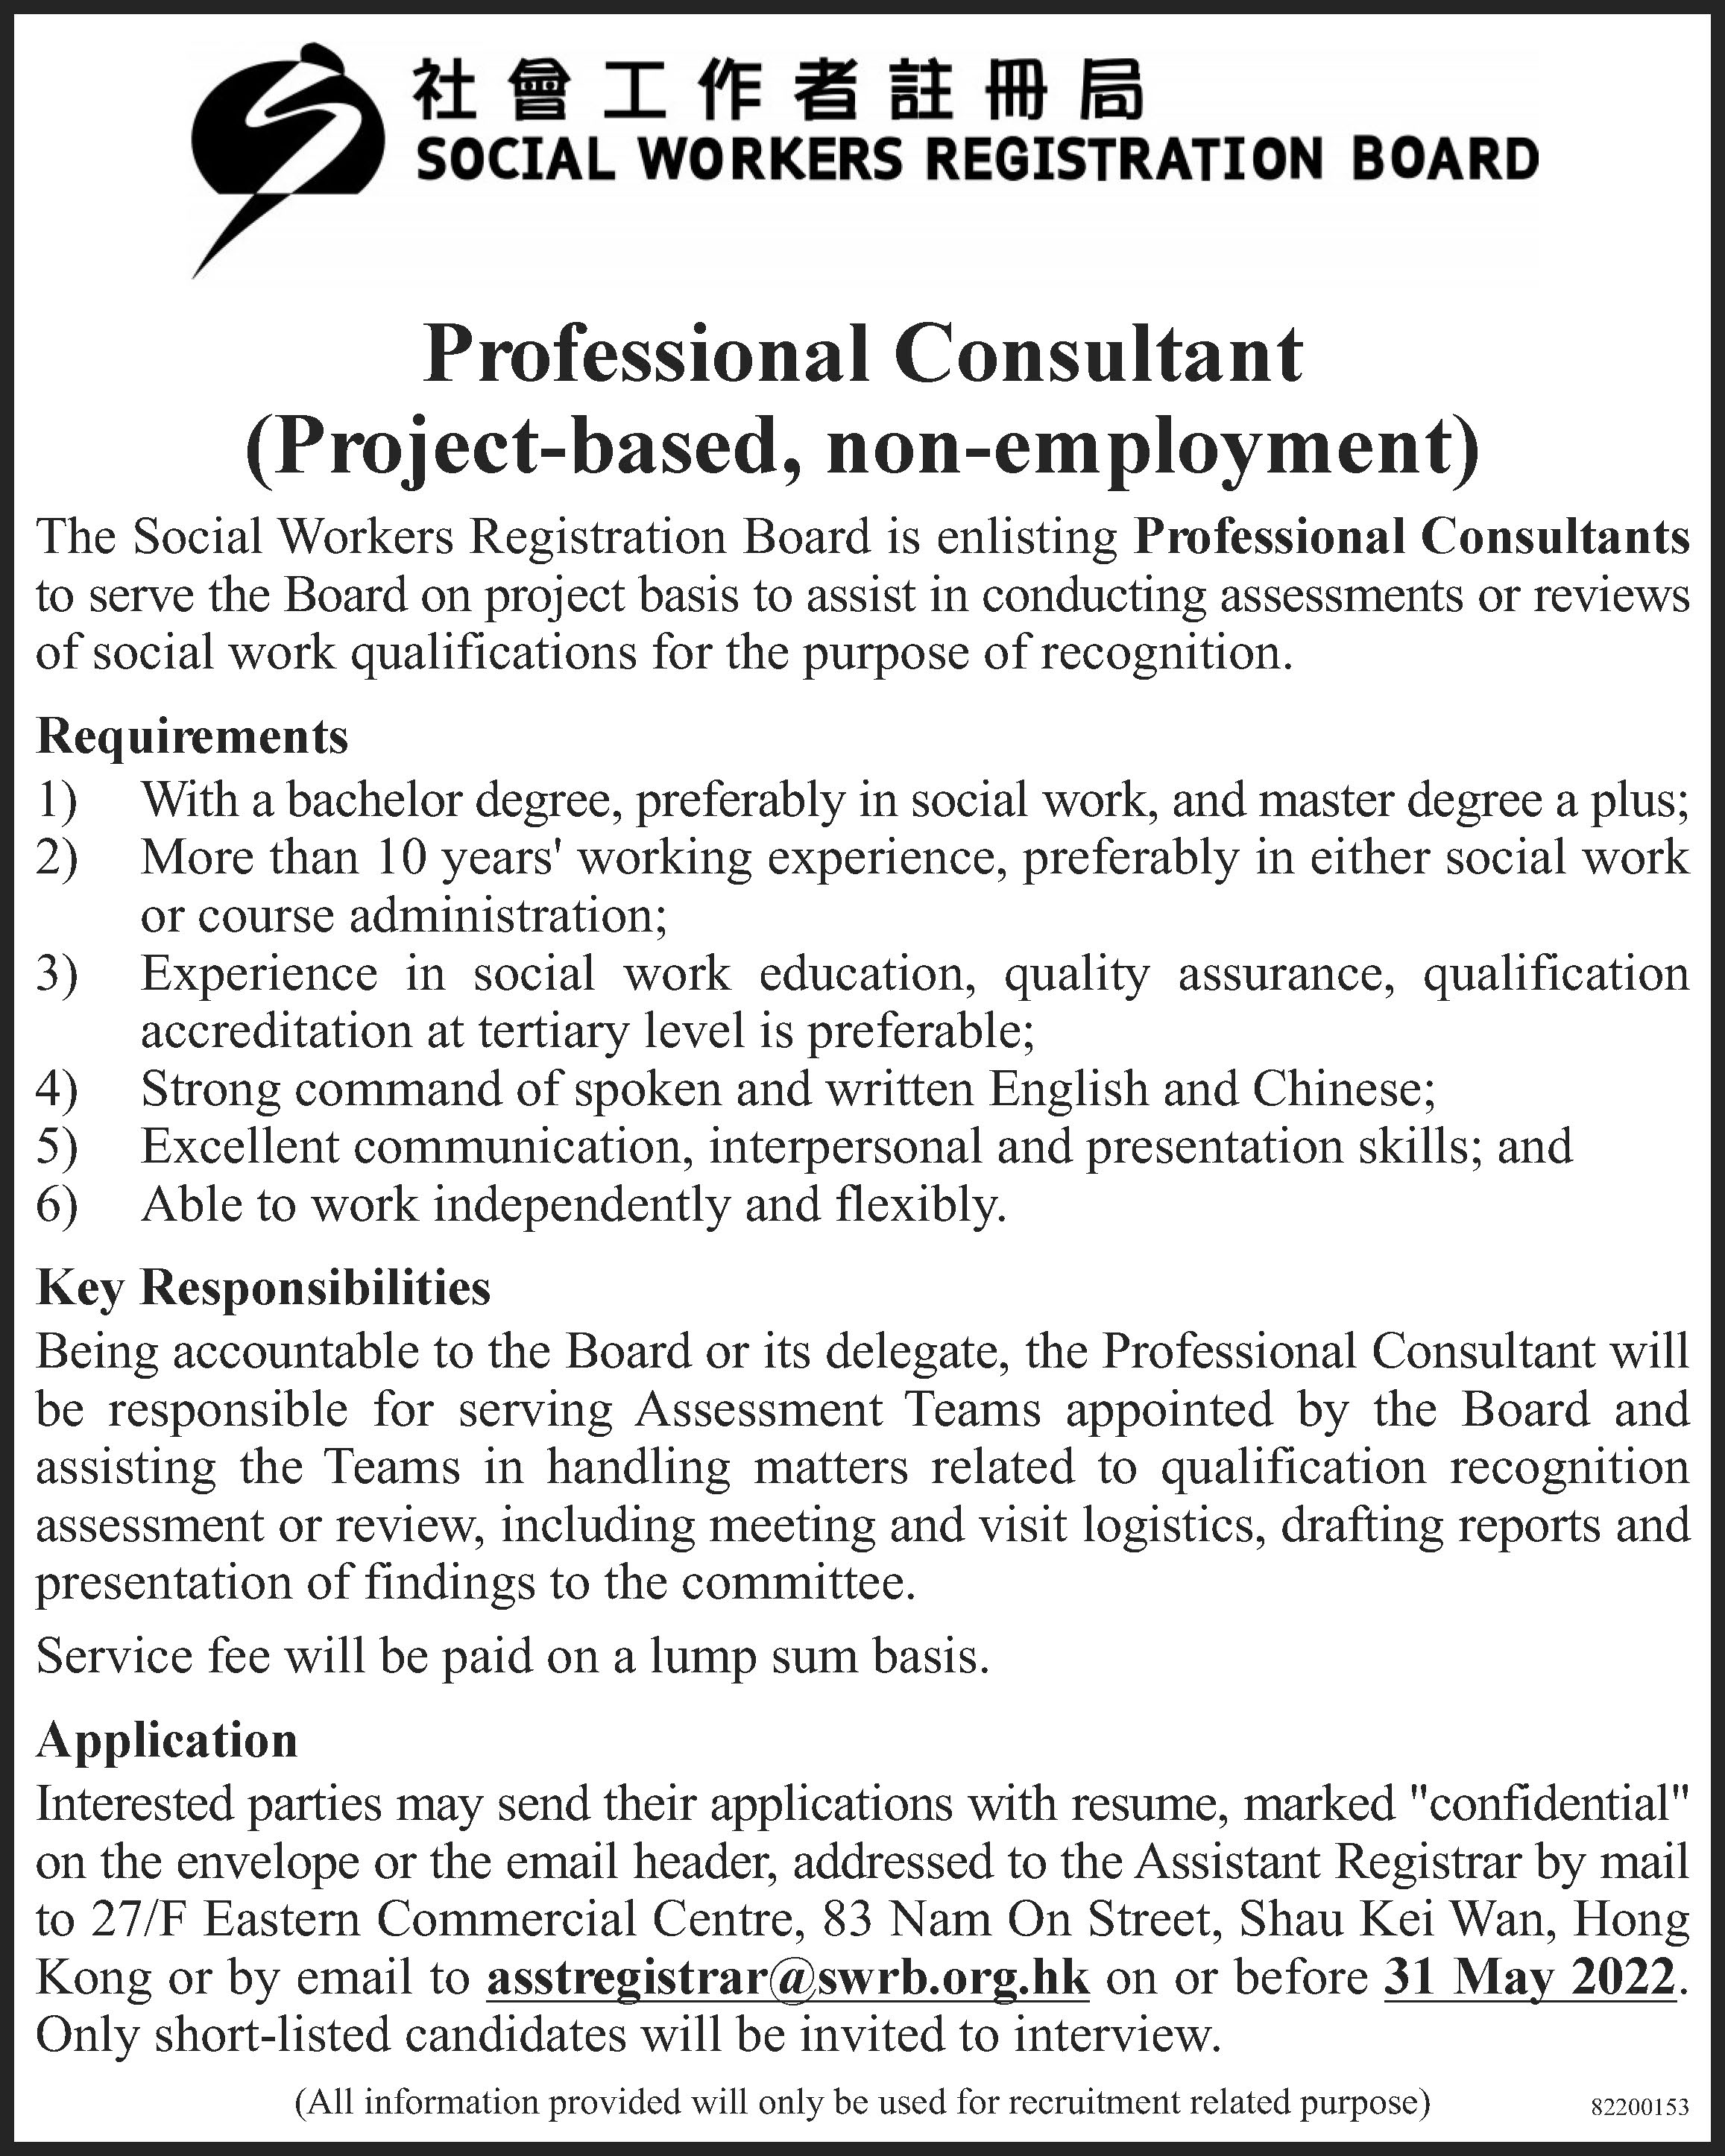 recruitment of professional consultant